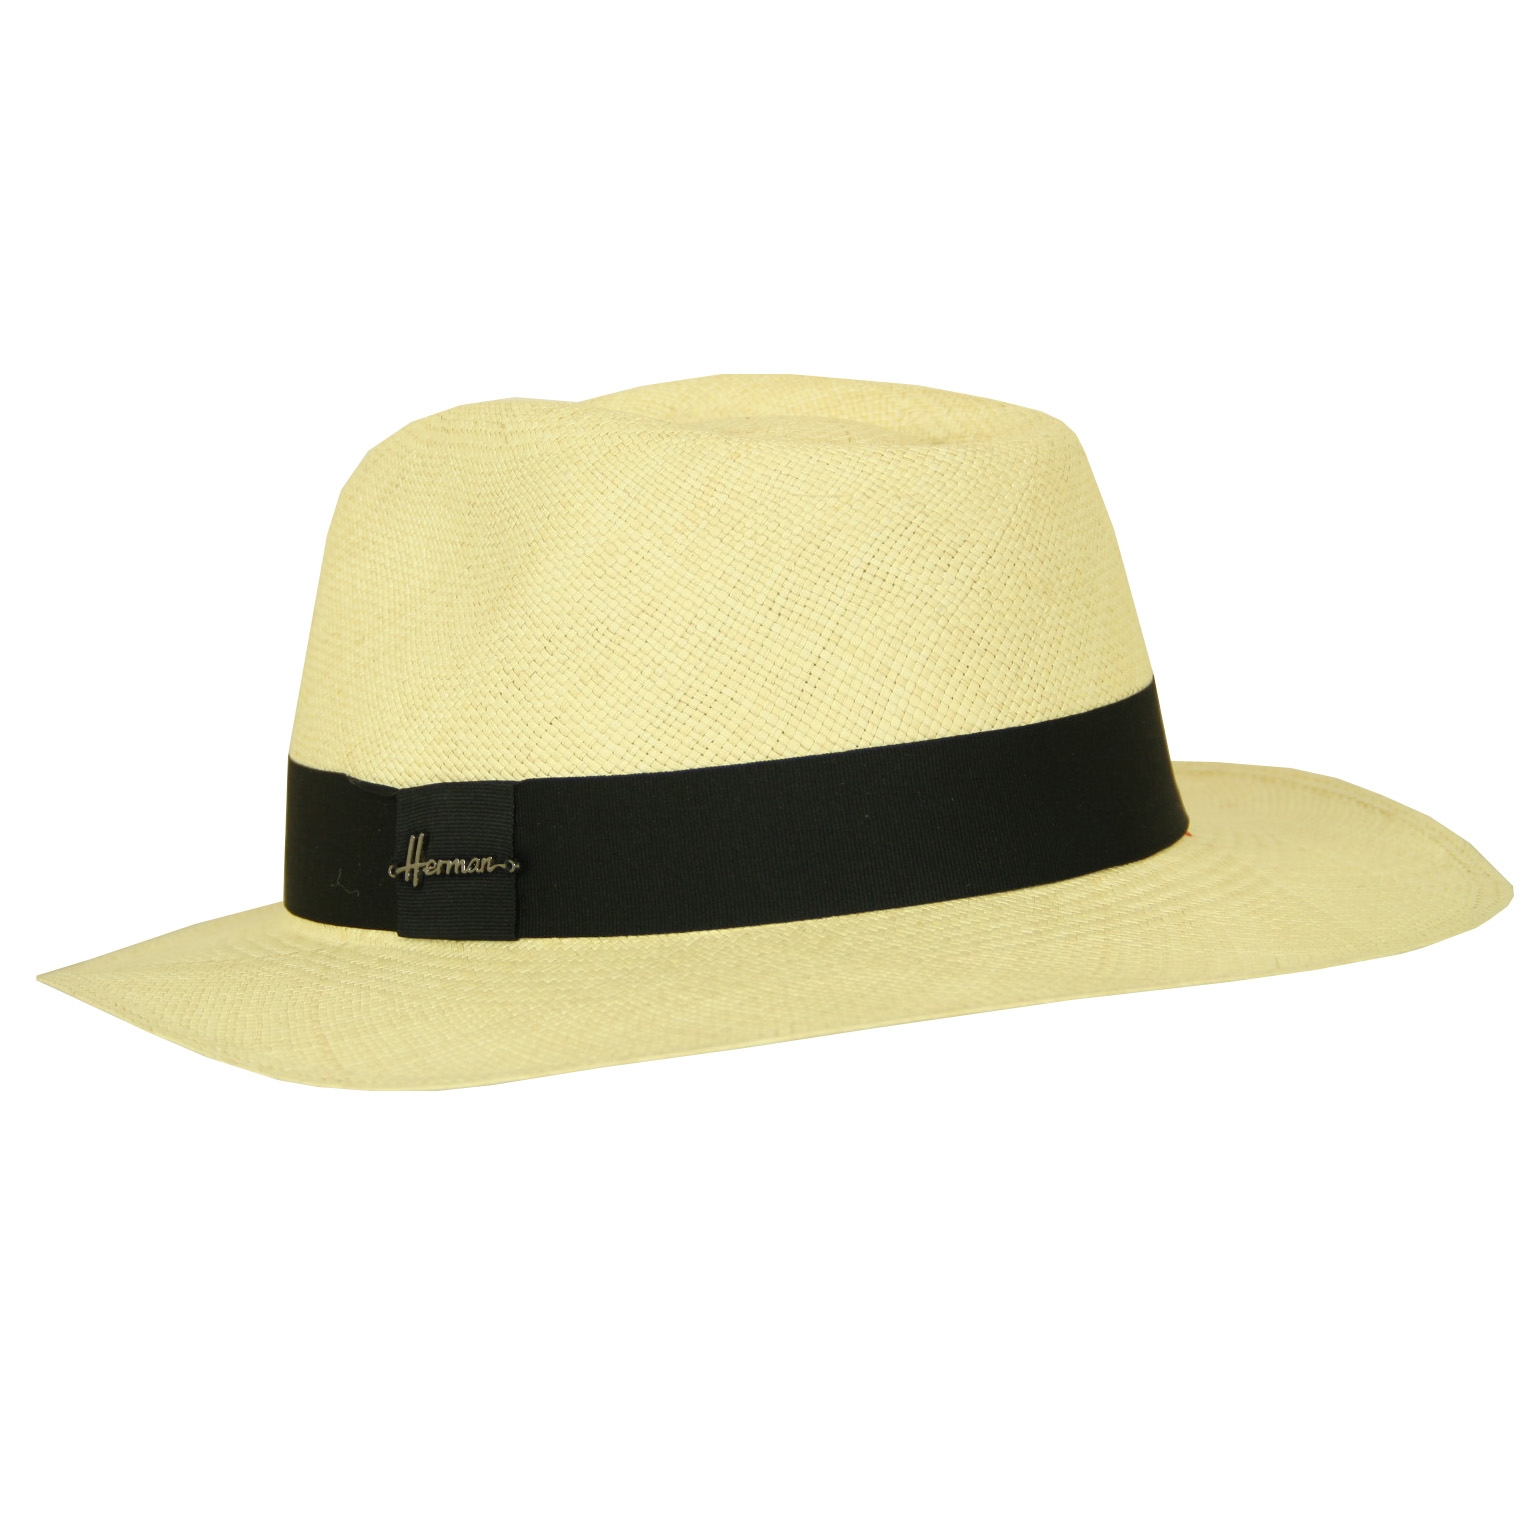 extase oud Negen Een originele en betaalbare Panama hoed, handgemaakt in Equador.